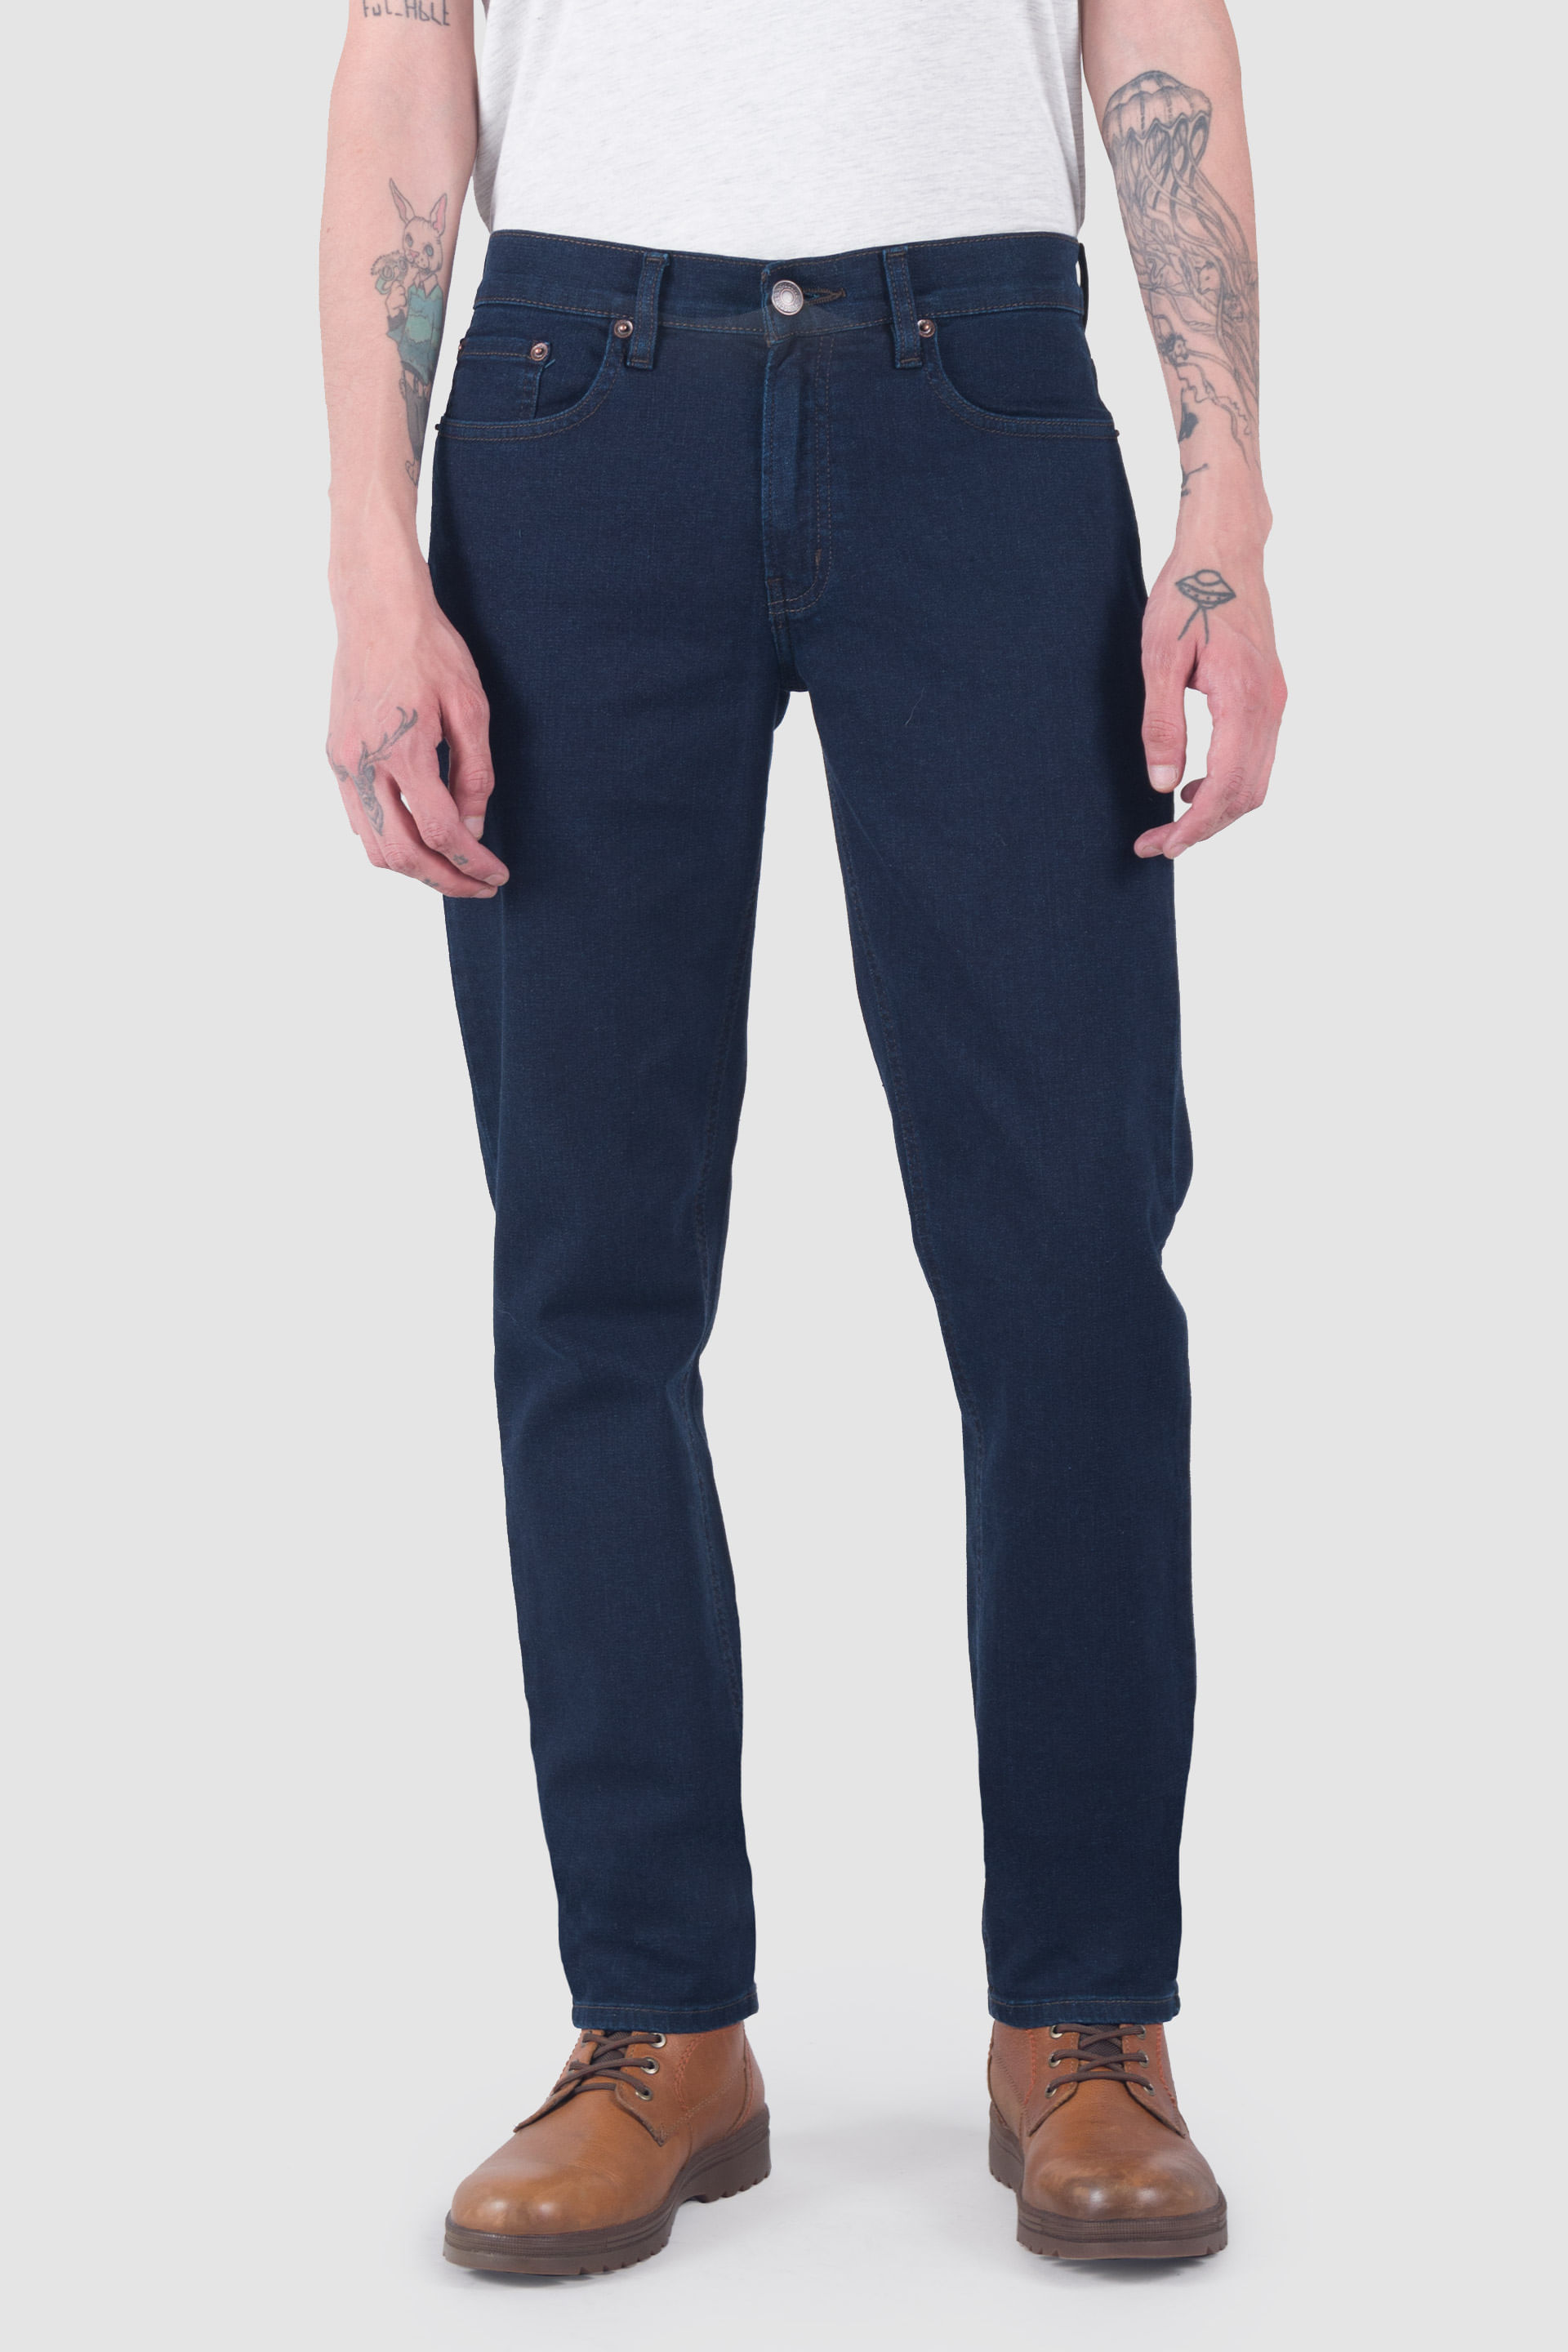 Baggy Jeans Azules Oscuro Hombre Clásico – Pantalones De Mezclilla CDMX  Expertos